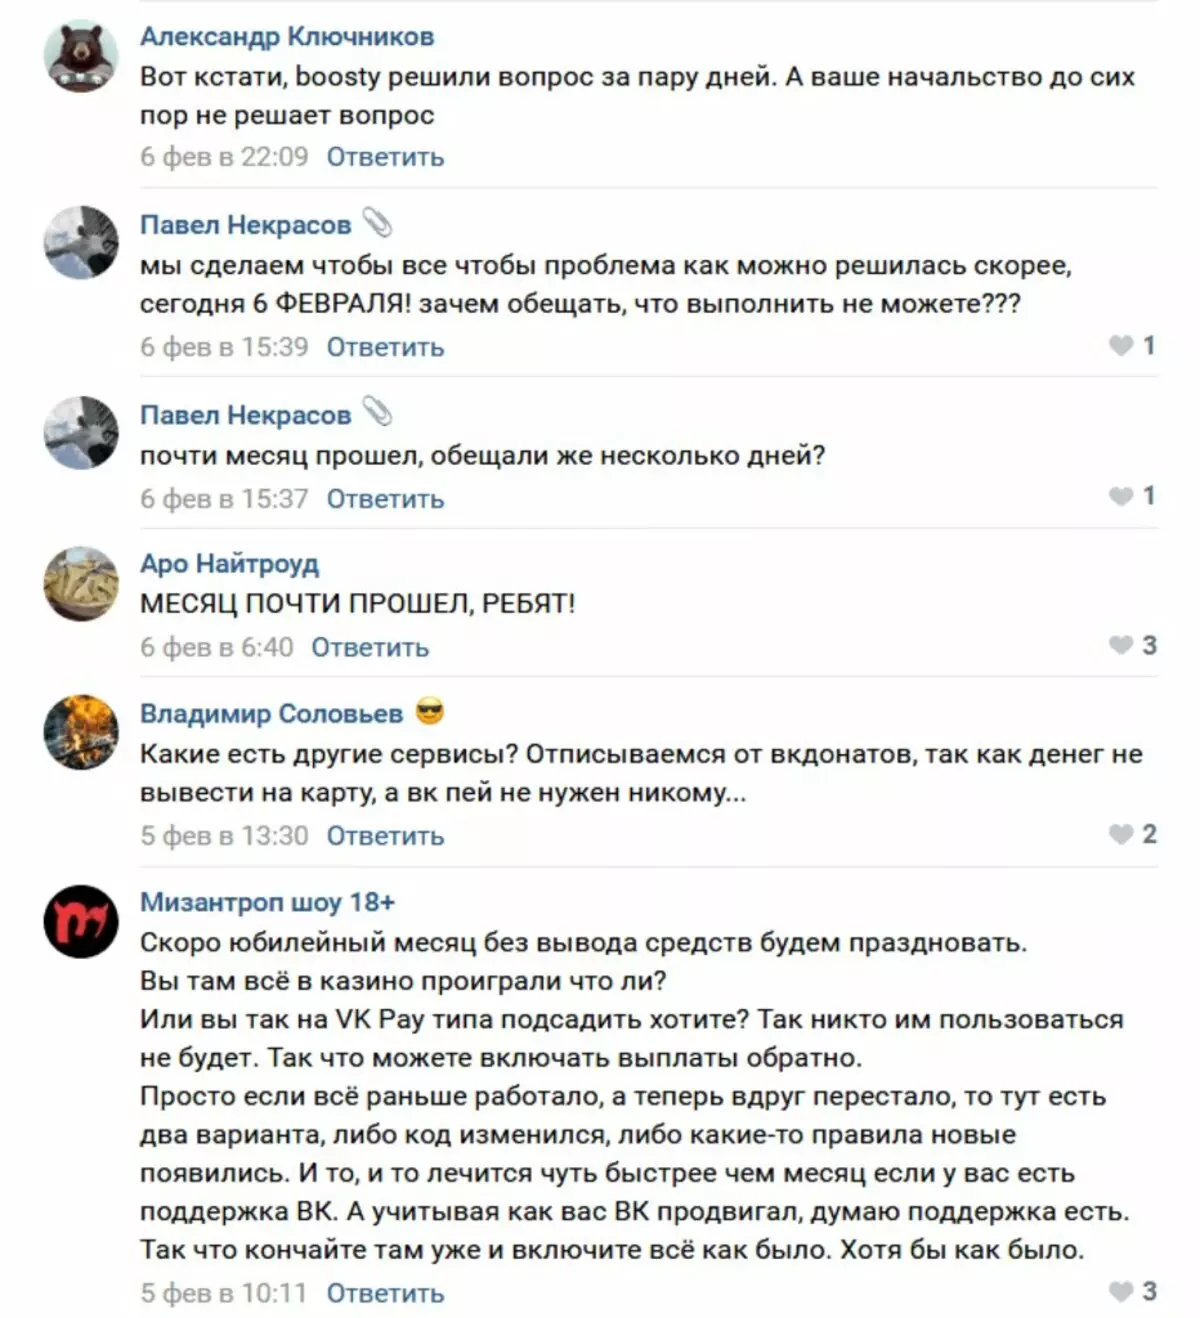 Vkontakte ಸಮುದಾಯಗಳು ಸುಮಾರು ಒಂದು ತಿಂಗಳು ವಿ.ಕೆ. ಡೋನಟ್ ಮೂಲಕ ಸ್ವೀಕರಿಸಿದ ಚಂದಾದಾರರಿಂದ ಹಣ ಹಿಂತೆಗೆದುಕೊಳ್ಳಲು ಸಾಧ್ಯವಿಲ್ಲ 3783_2